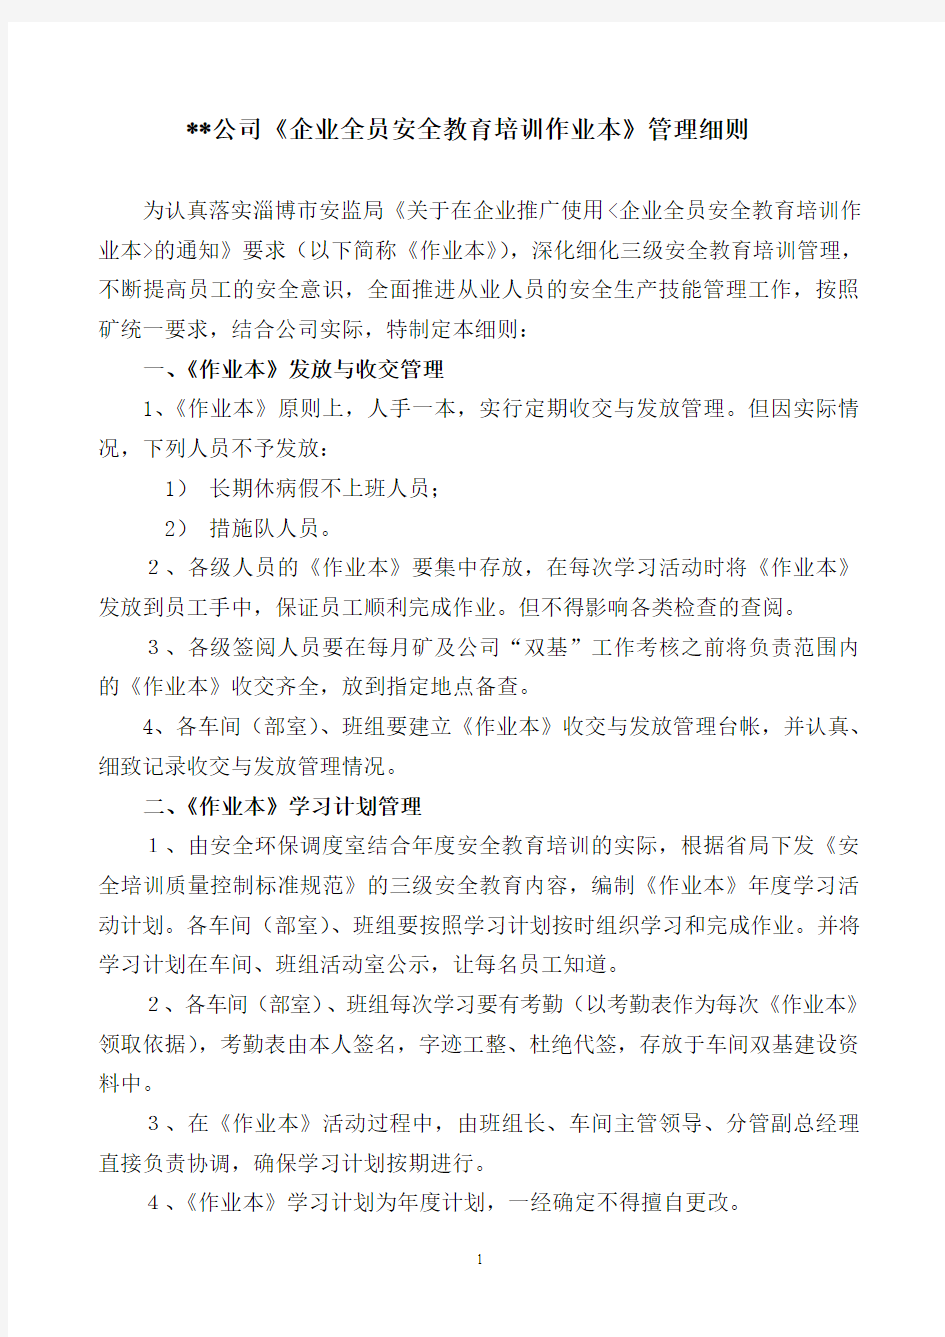 淄博市企业全员安全教育培训作业本管理细则